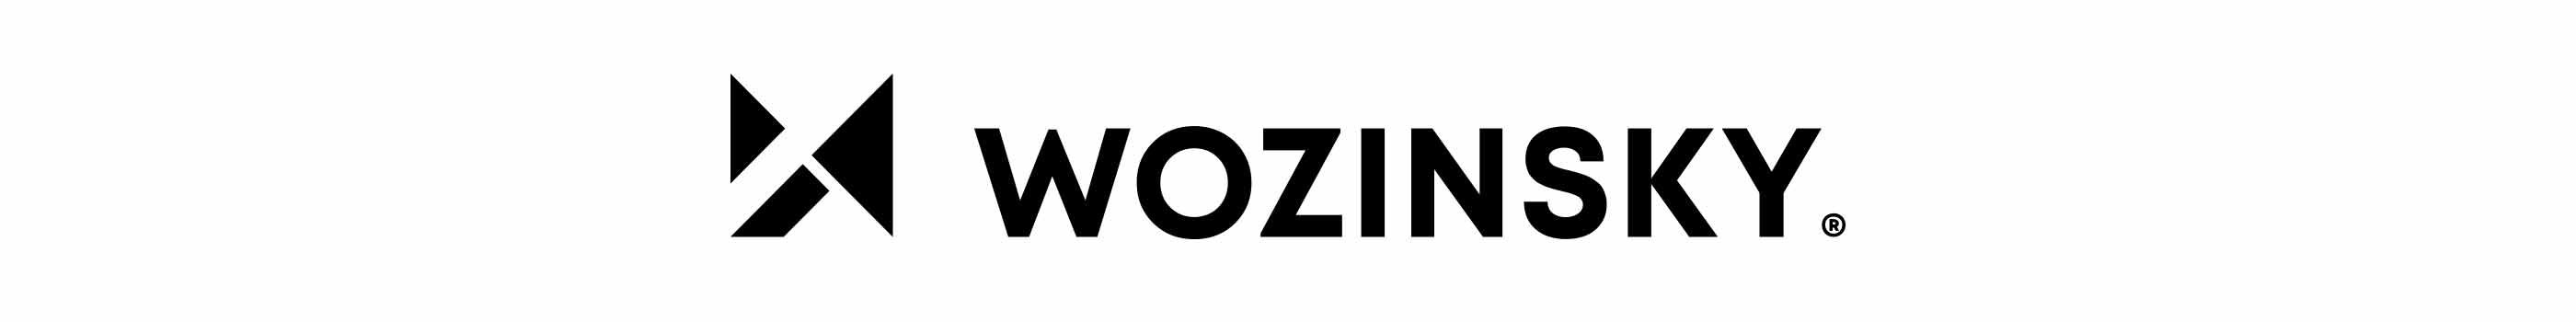 wozinsky-logo-baner.jpg